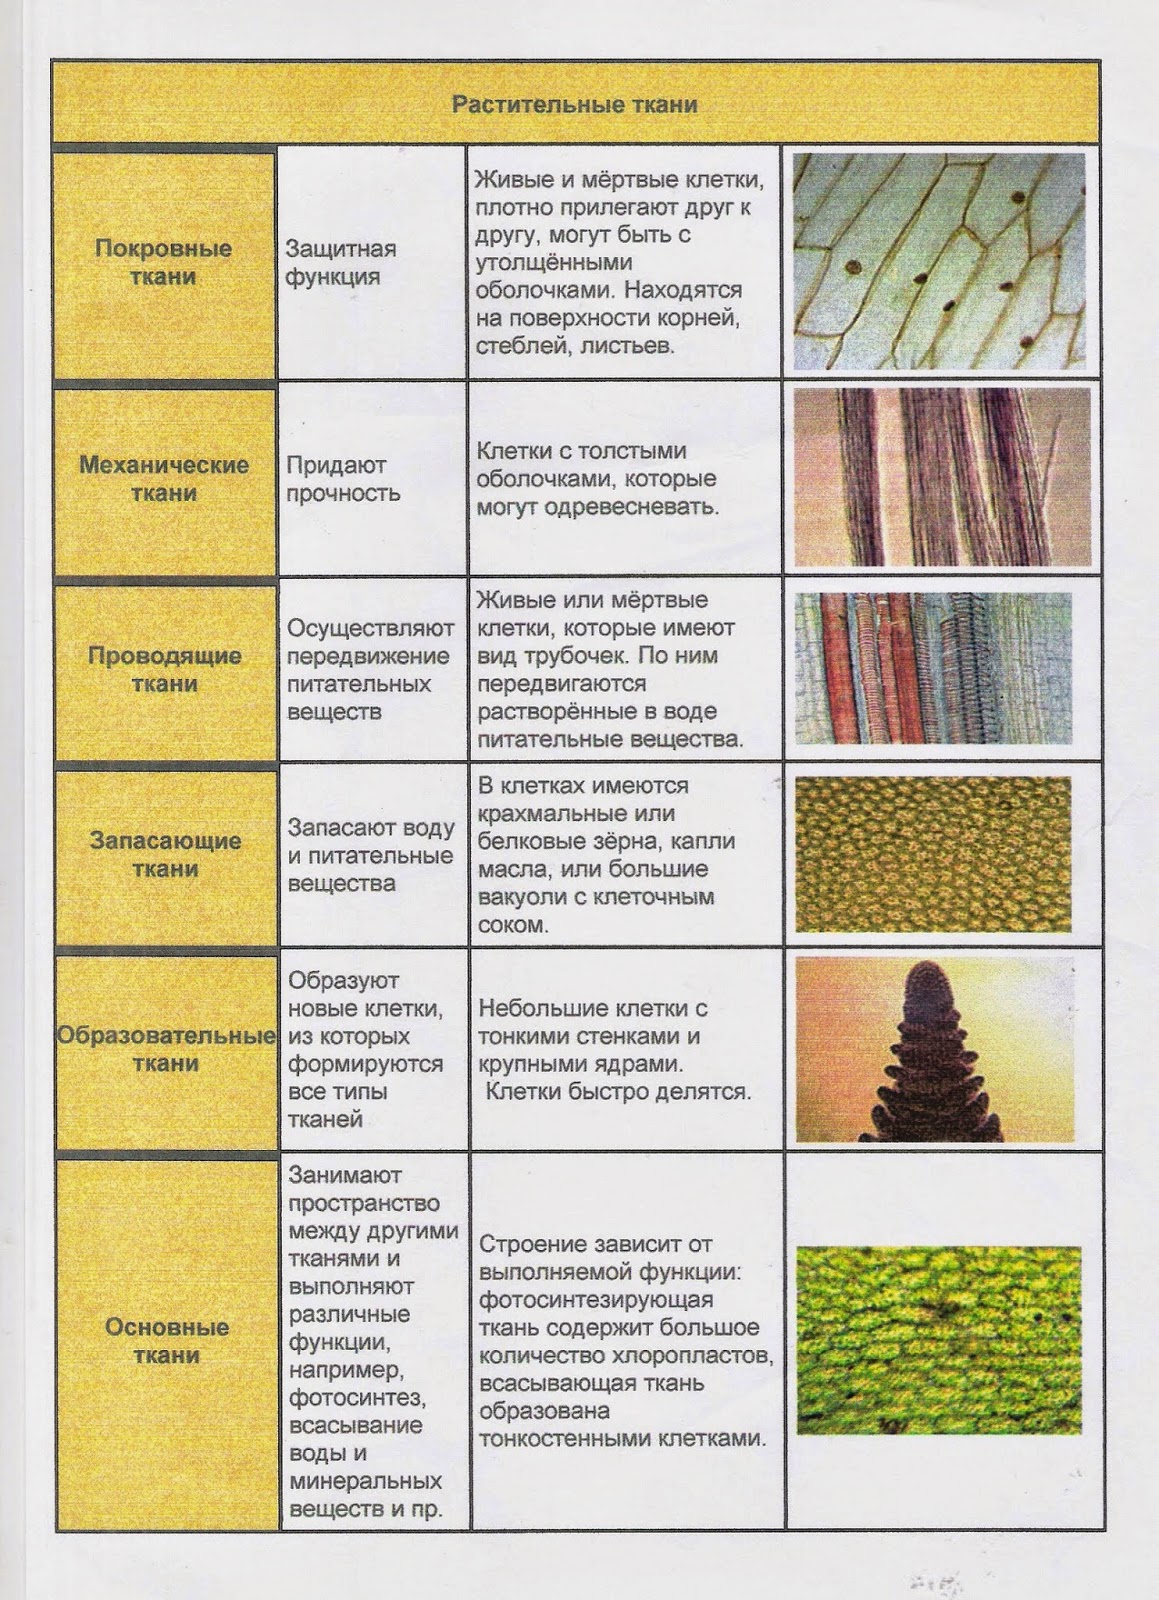 Какие ткани имеются в растениях. Таблица растительные ткани 6 класс биология. Типы тканей растений 6 класс биология таблица. Виды тканей растений таблица биология 6 класс. Виды тканей растений 5 класс биология таблица.